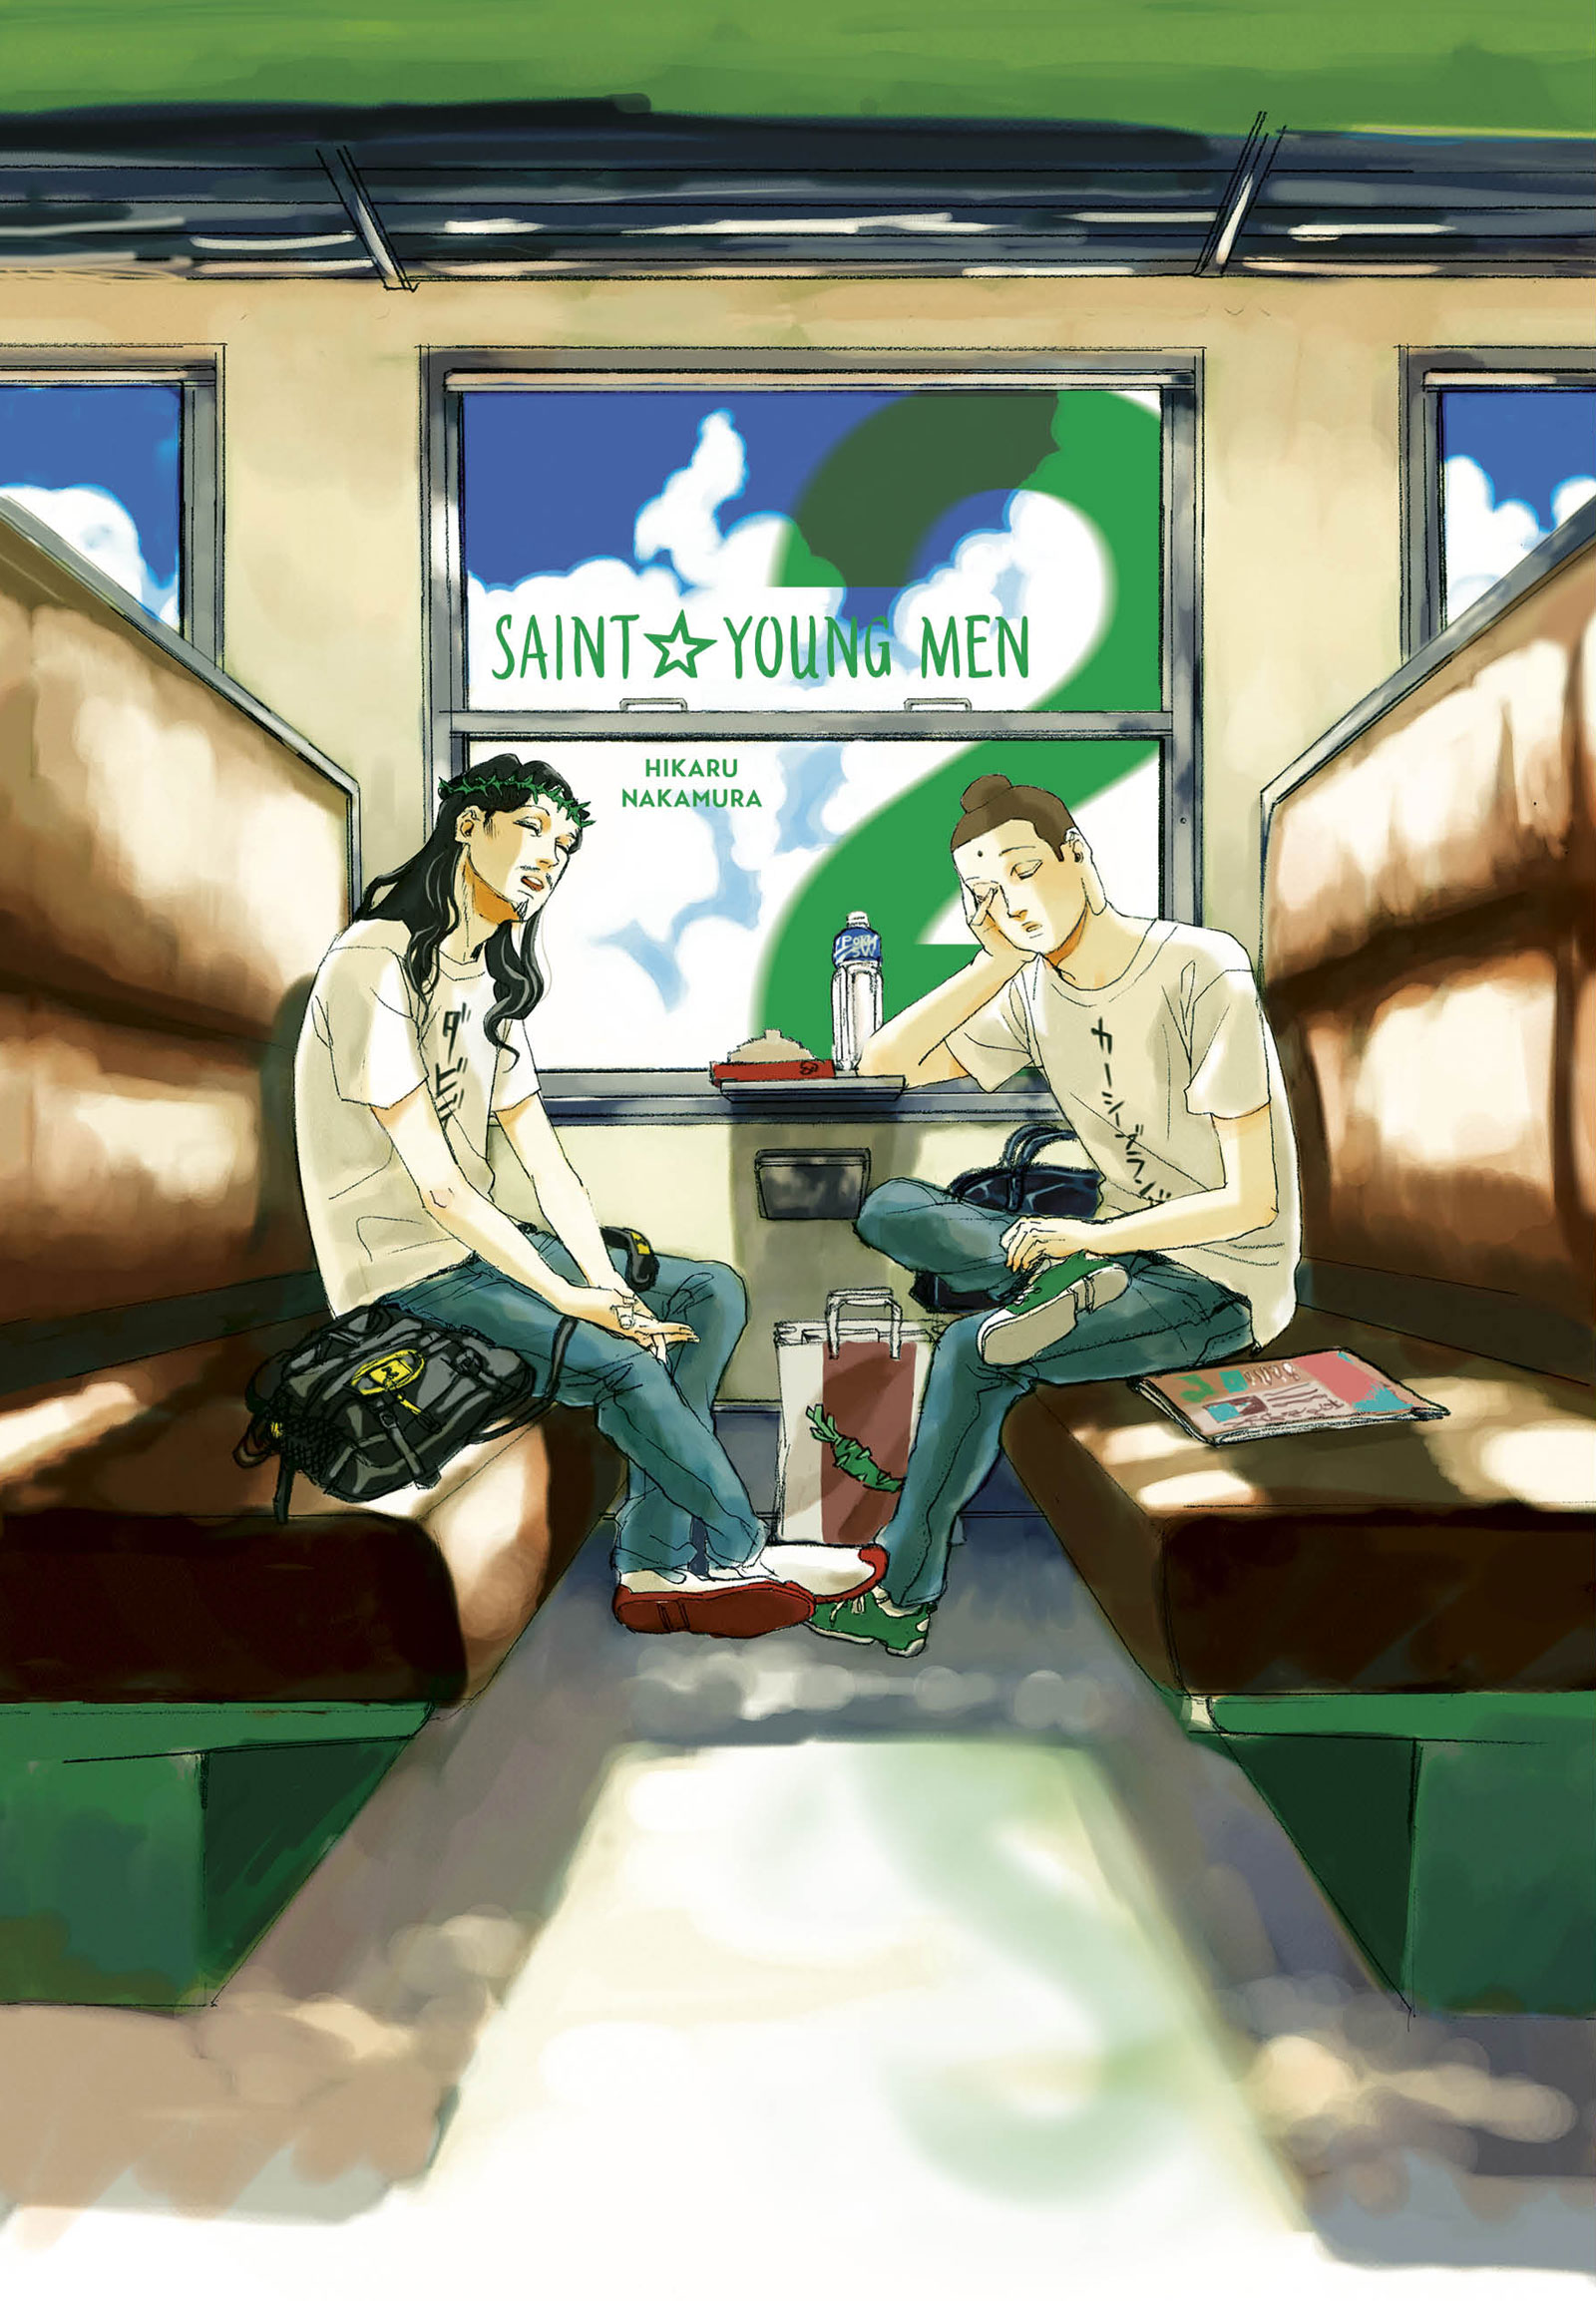 Saint Young Men: A Manga About Buddha and Jesus